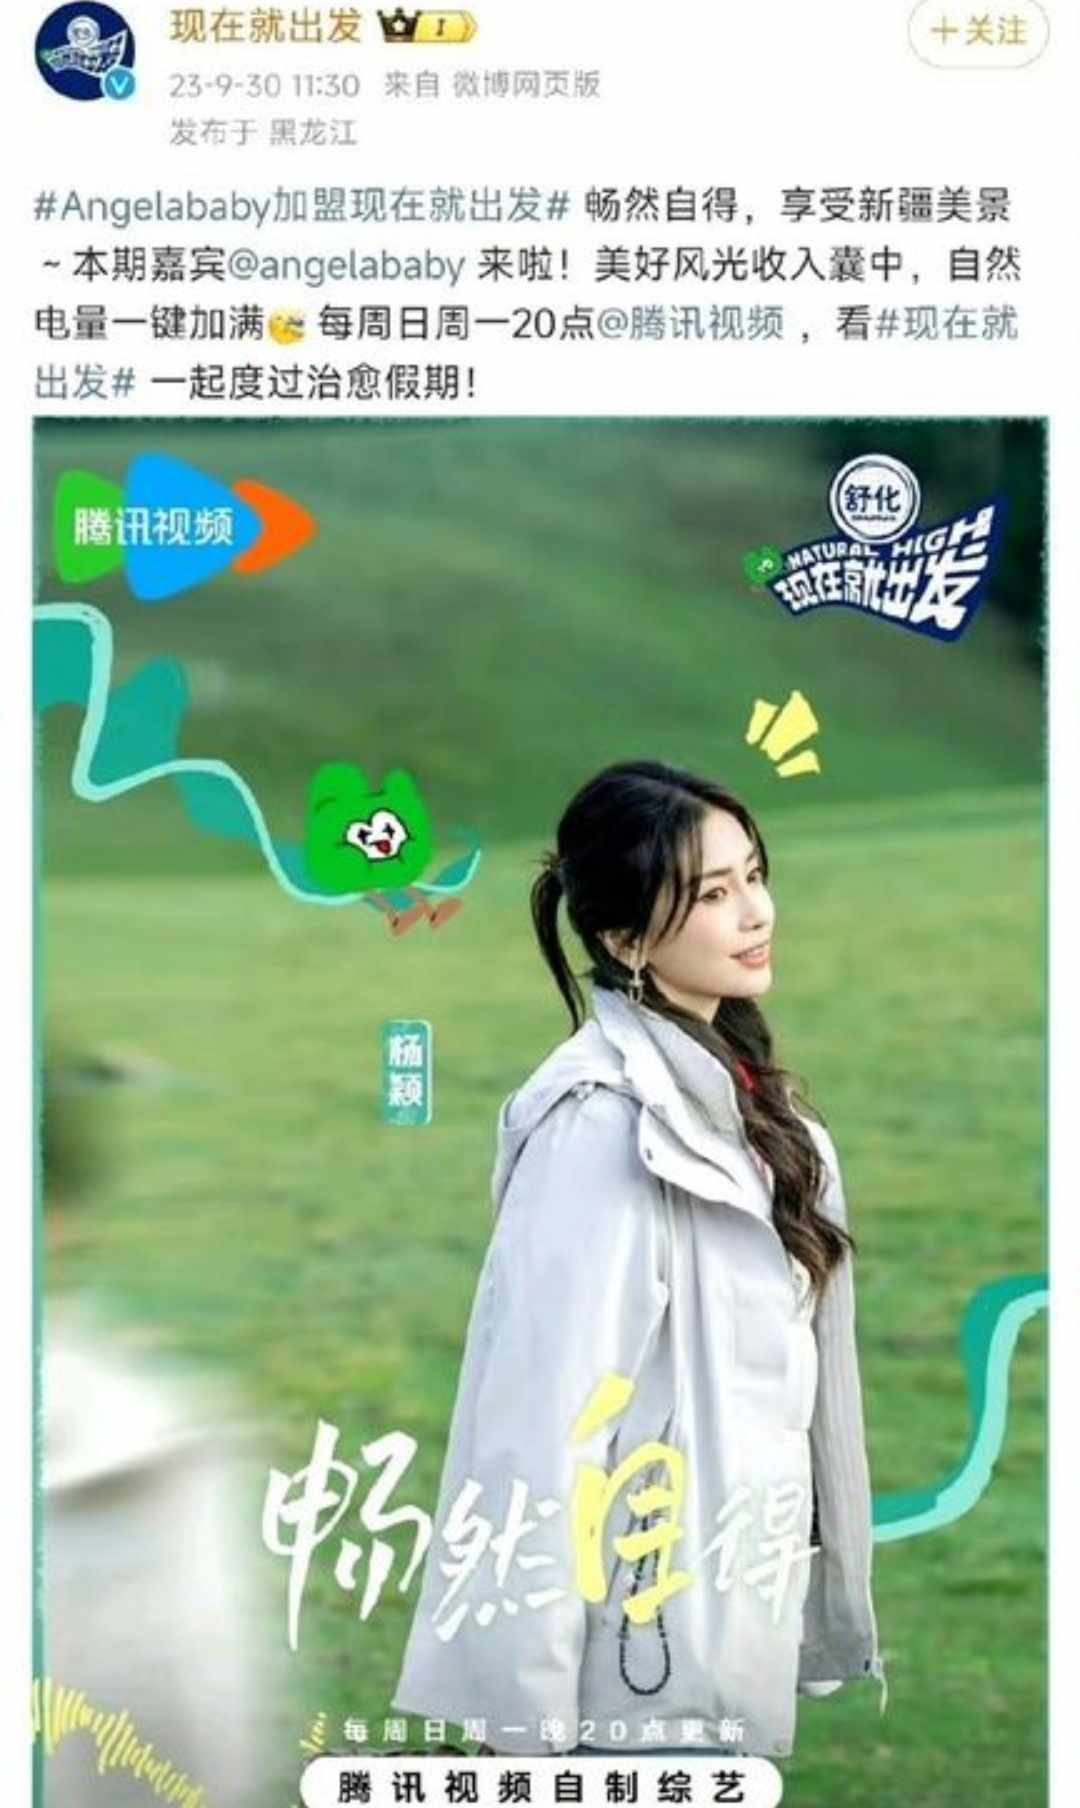 Ảnh CCTV 17 (Tam Nông) xóa video Angelababy